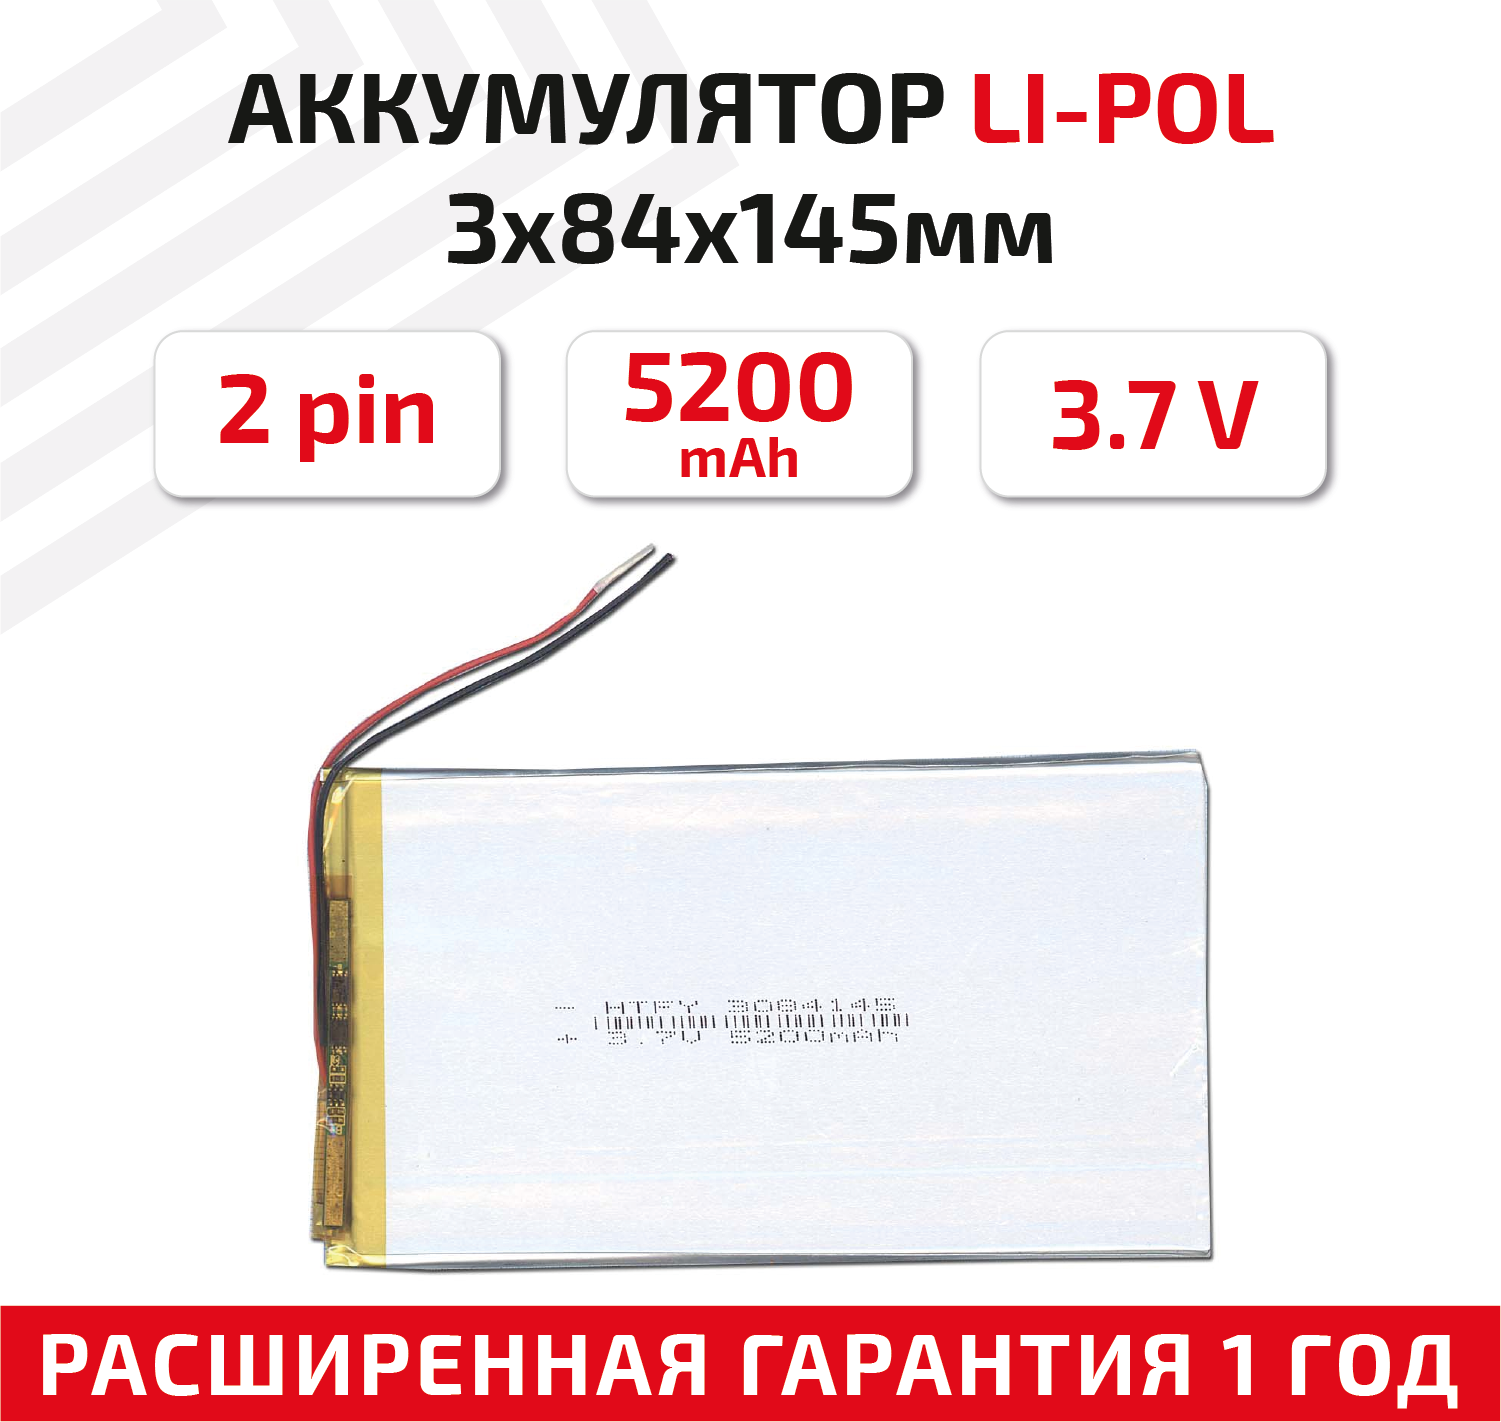 Универсальный аккумулятор (АКБ) для планшета, видеорегистратора и др, 3х84х145мм, 5200мАч, 3.7В, Li-Pol, 2pin (на 2 провода)